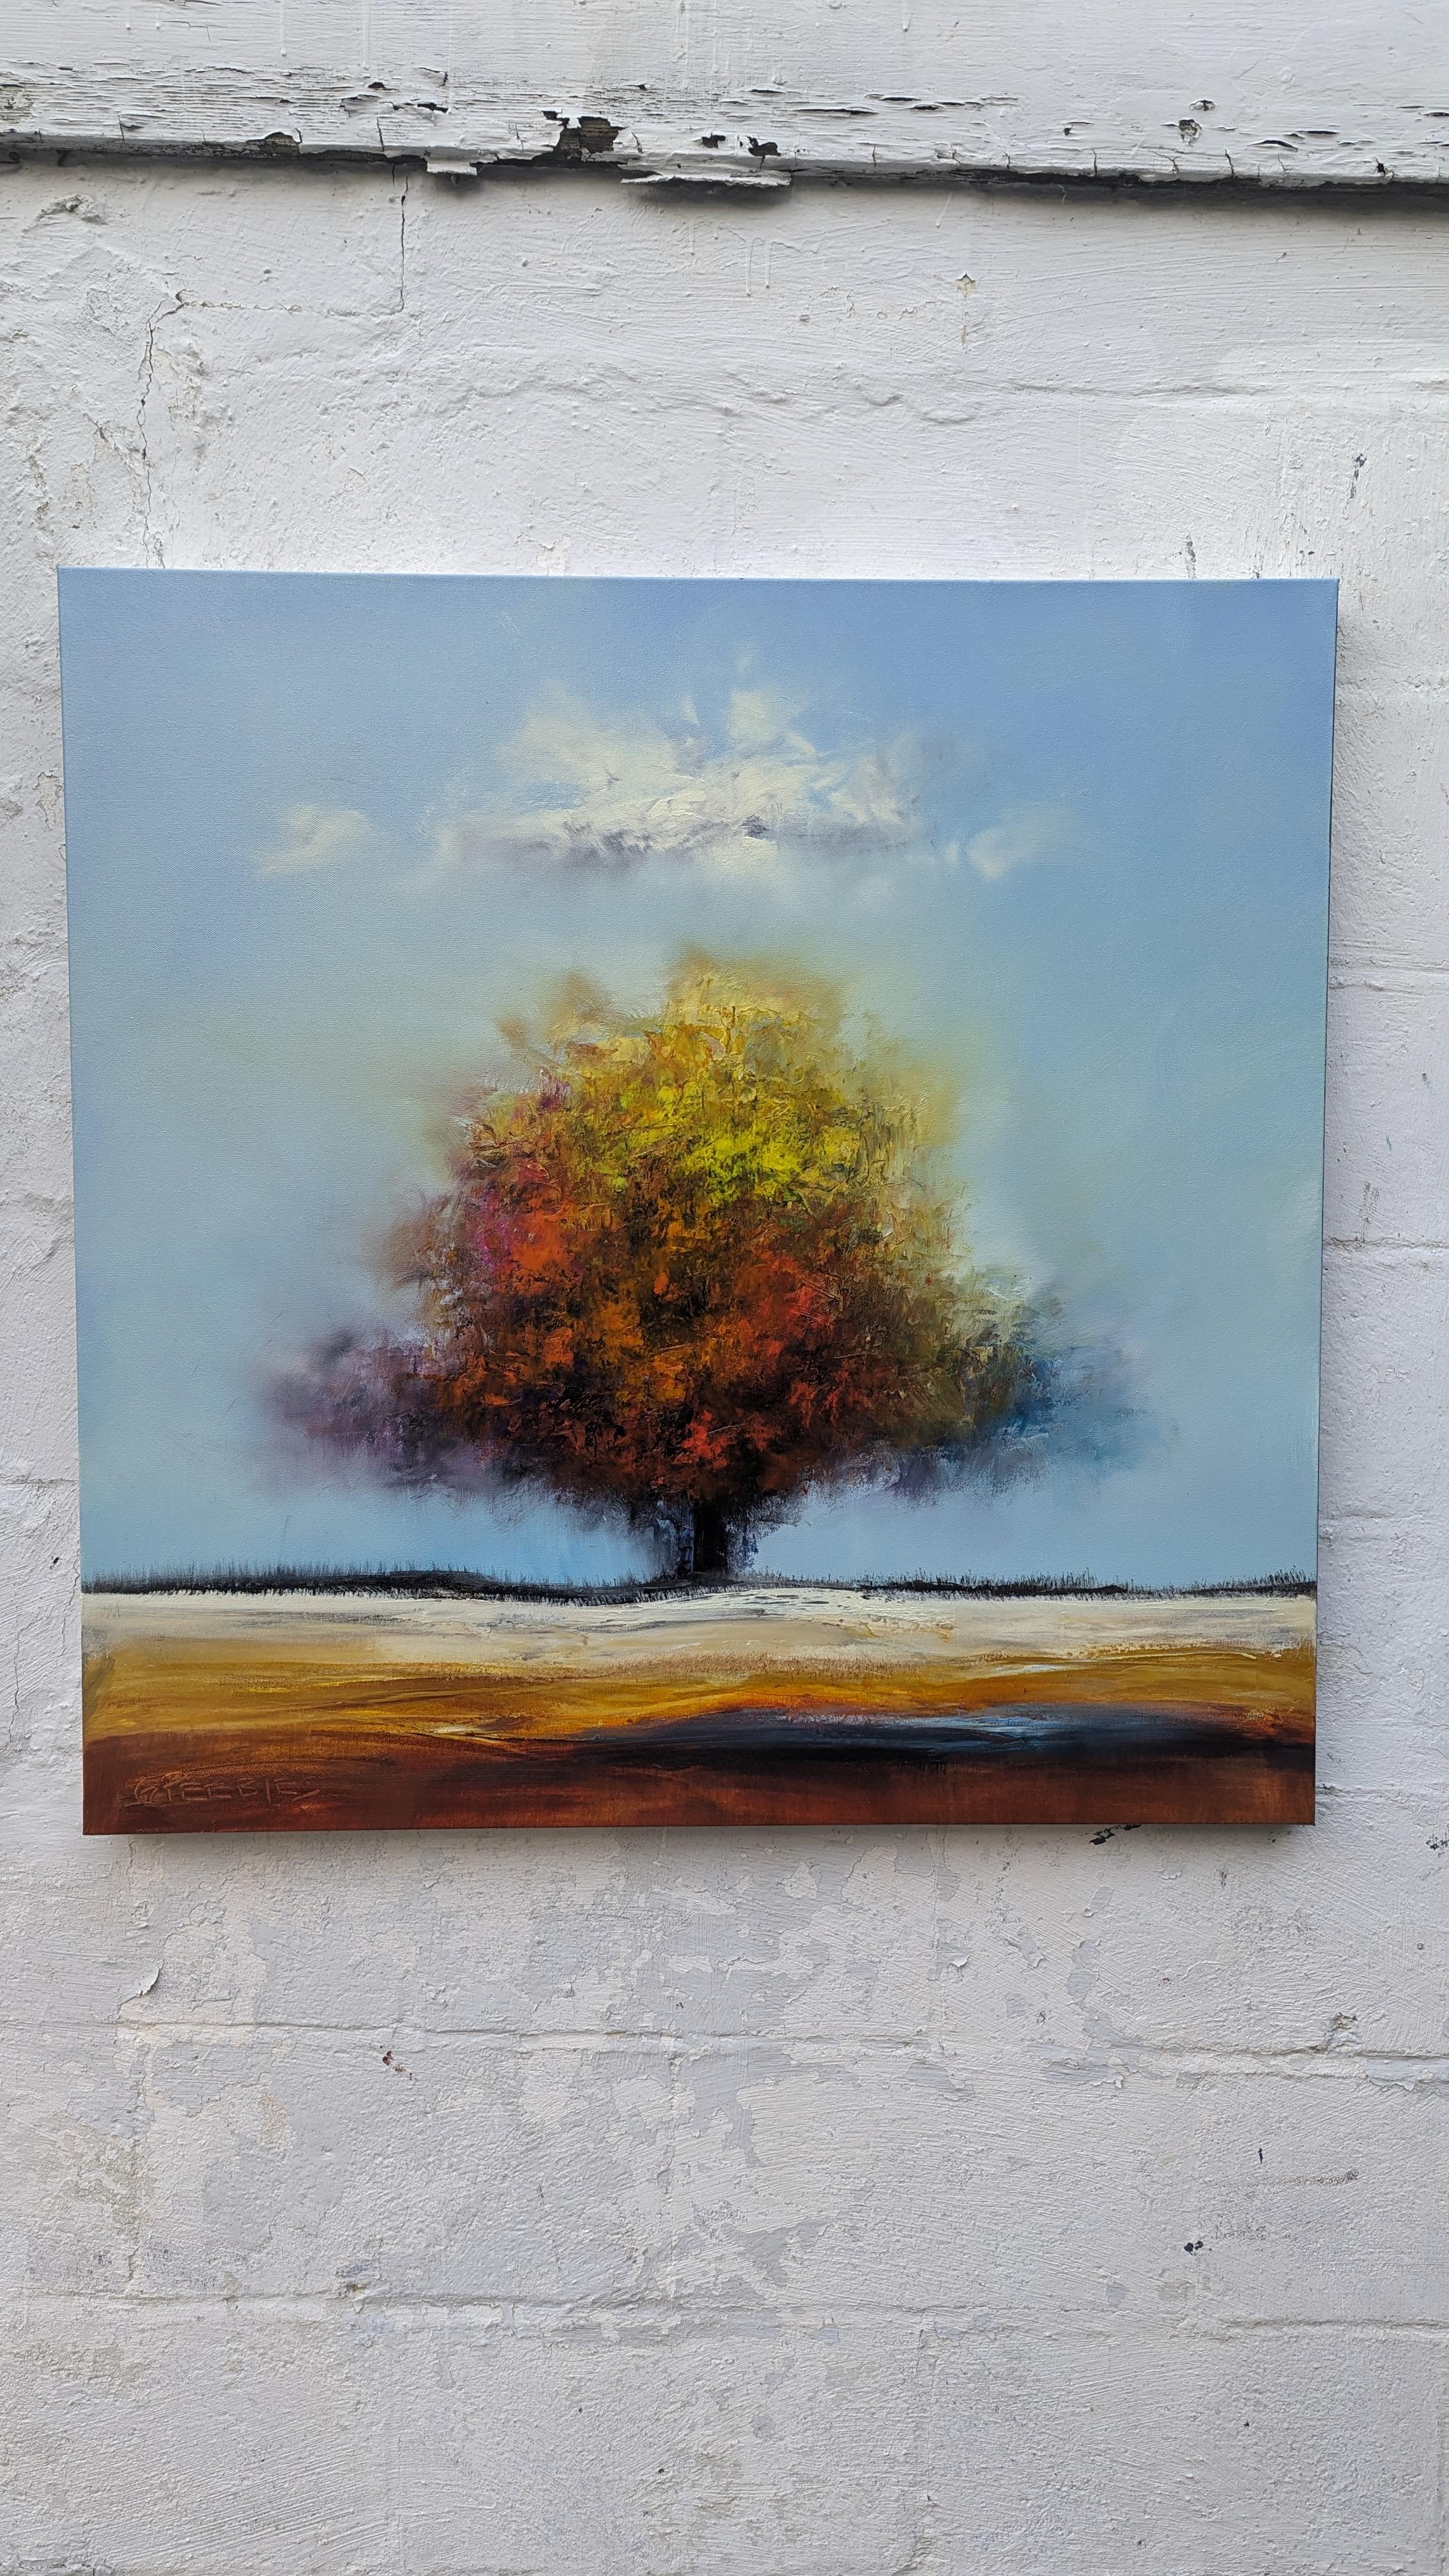 <p>Kommentare des Künstlers<br>Ein einsamer Baum steht inmitten einer großen Wiese, über der eine einzelne Wolke schwebt. Seine in Gelb- und Rottönen gefärbten Blätter sind ein subtiler Hinweis auf den Wechsel der Jahreszeiten. Die Lebendigkeit des